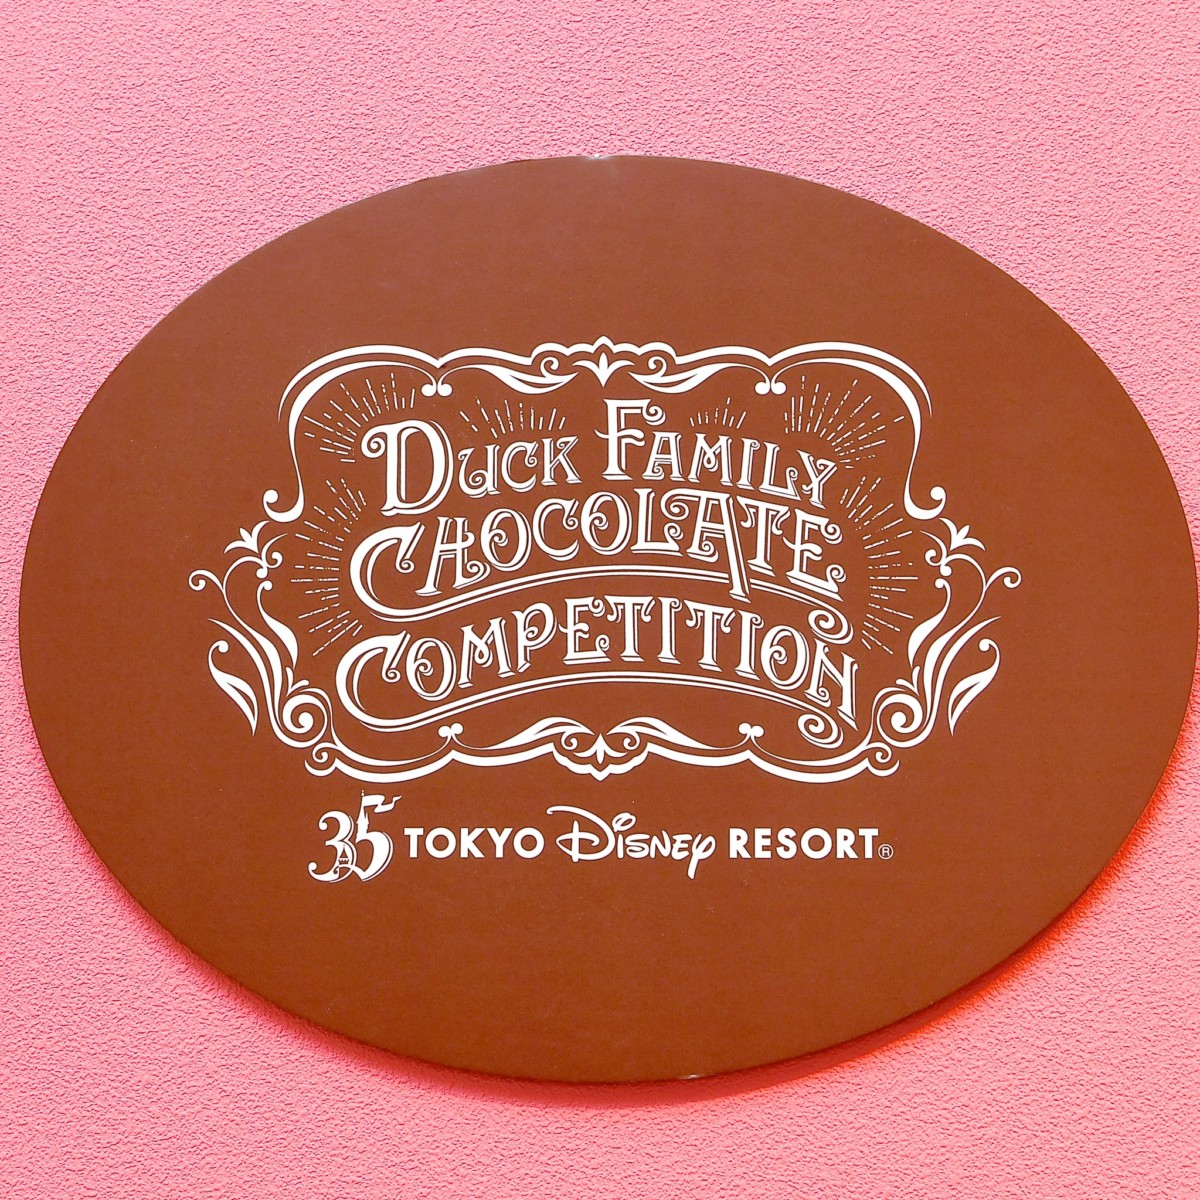 ドナルドたちのチョコレートクランチのお店 東京ディズニーリゾート35周年期間限定ショップ Duck Family Chocolate Competition グッズ Dtimes